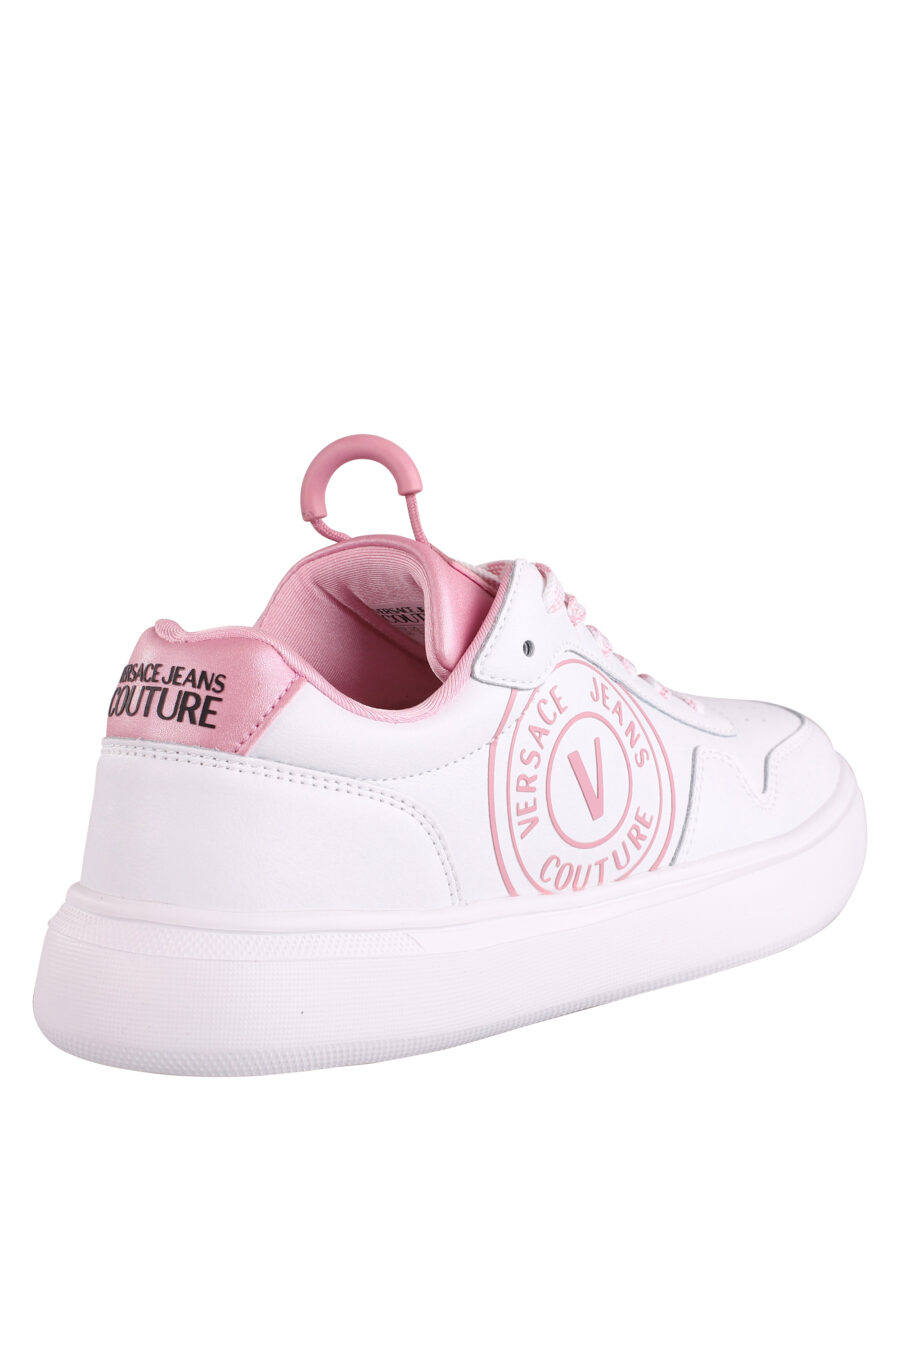 Zapatillas blancas con detalles y logo rosa - IMG 9017